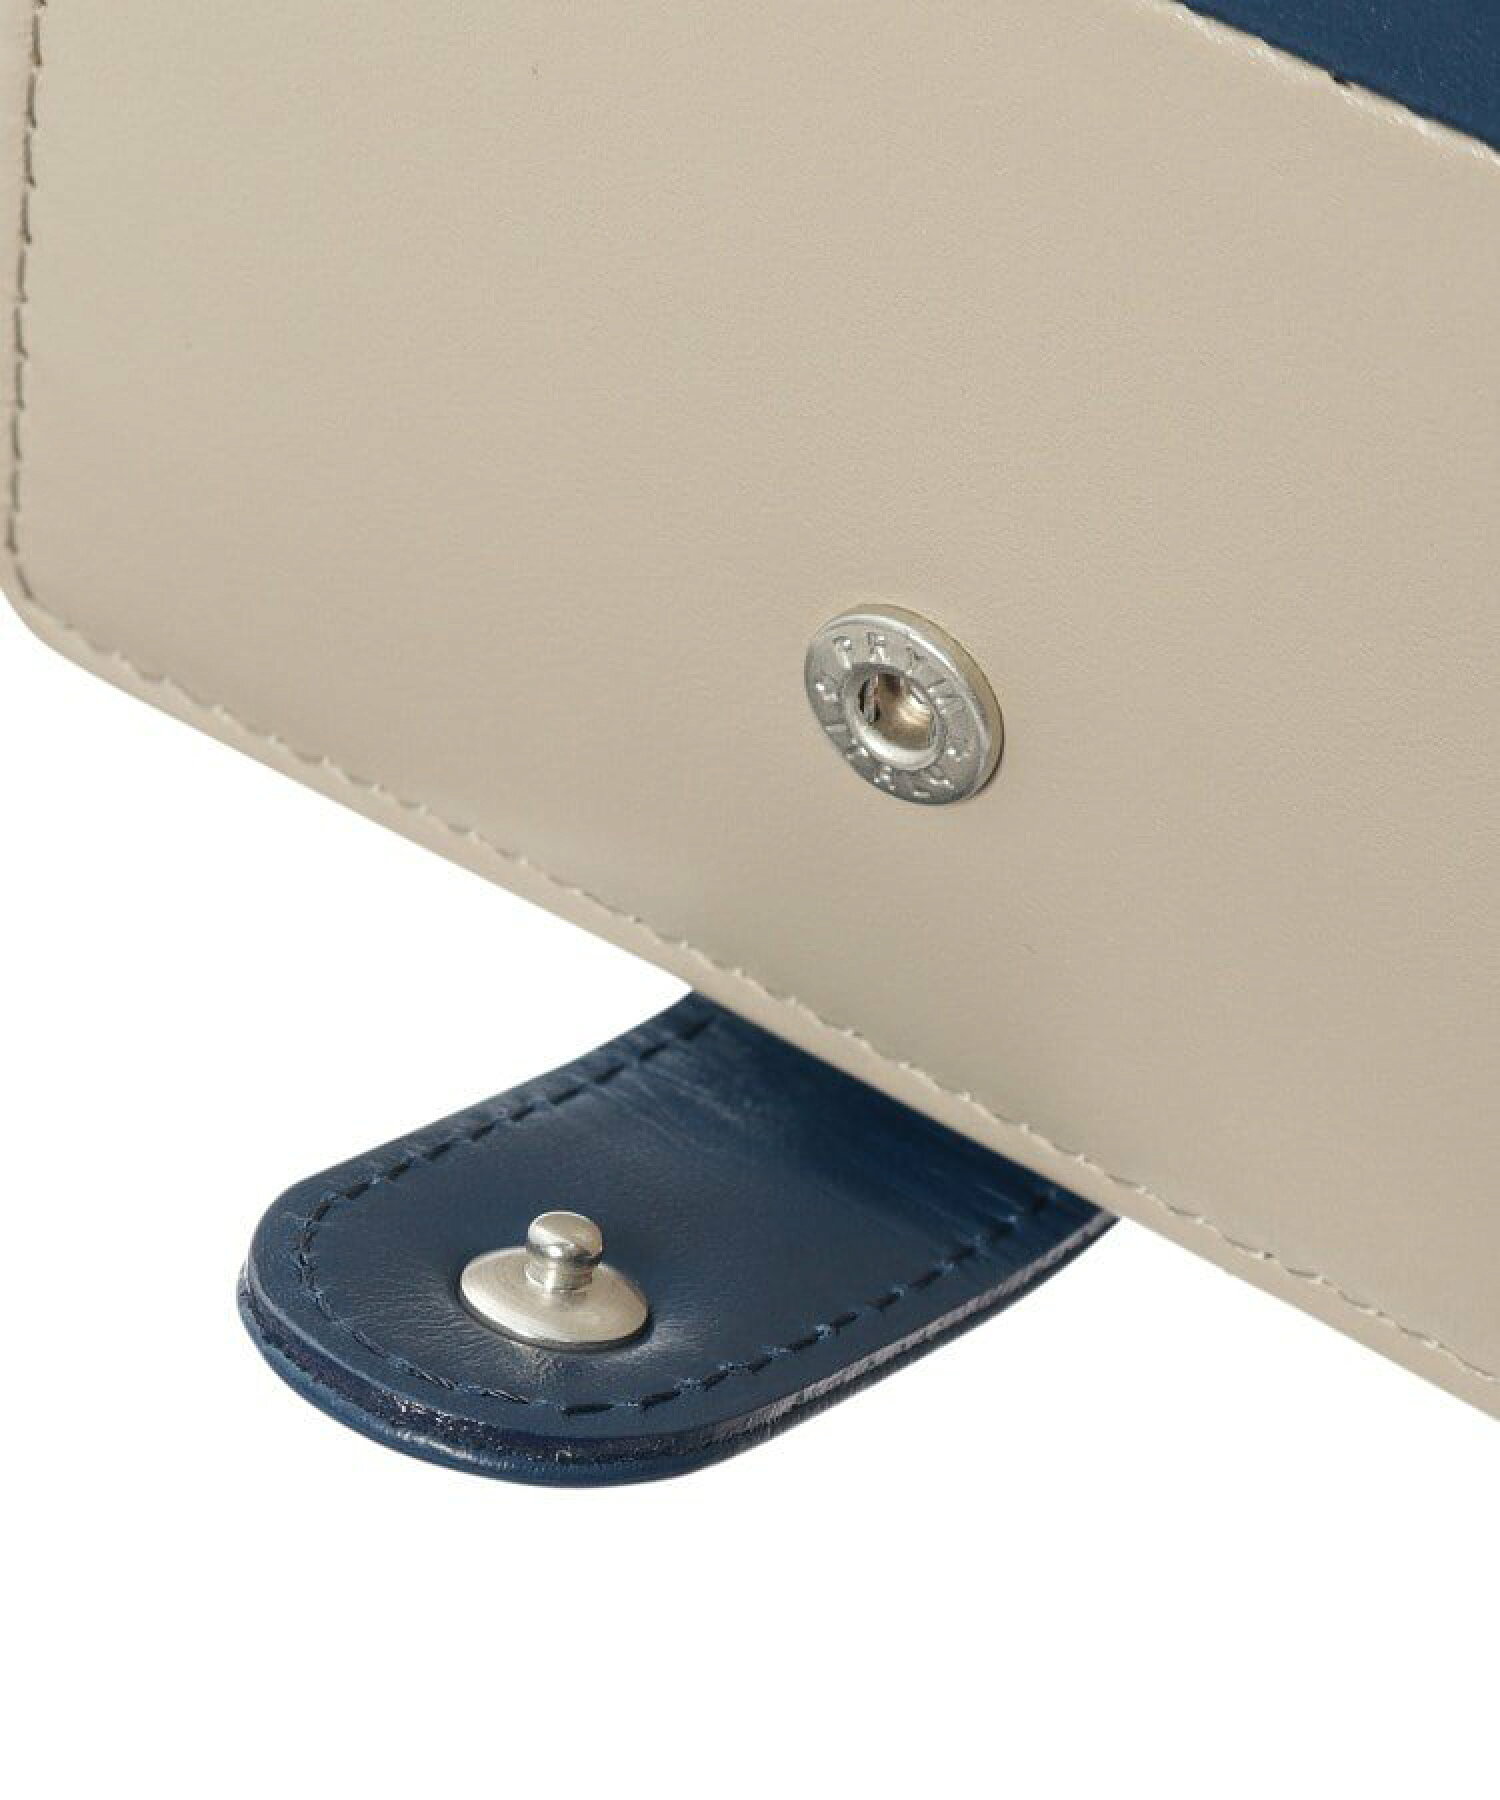 【WEB限定】GIORNO(ジョルノ)薄型二つ折り財布